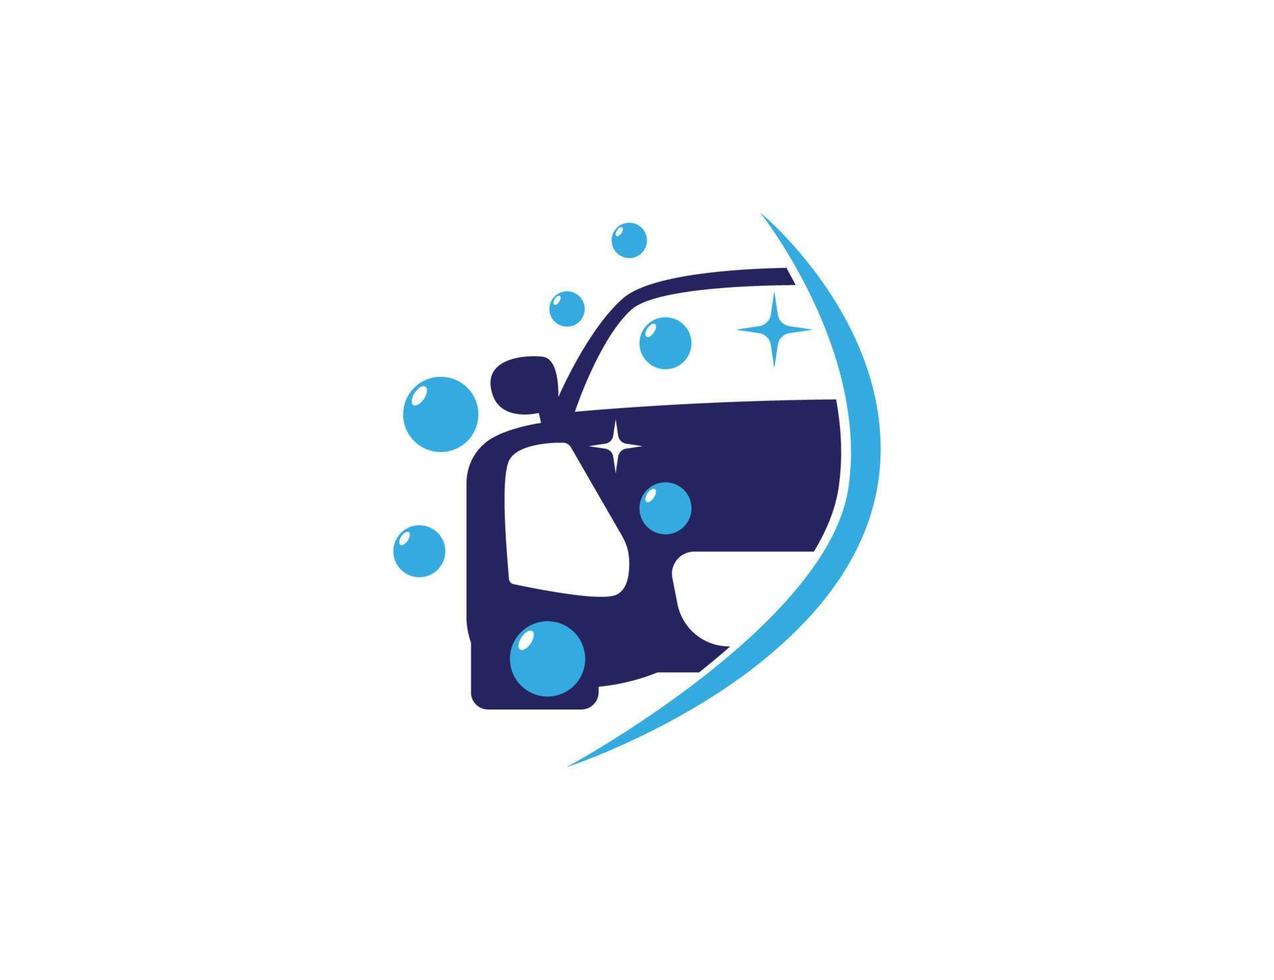 Car wash logo design illustration vector